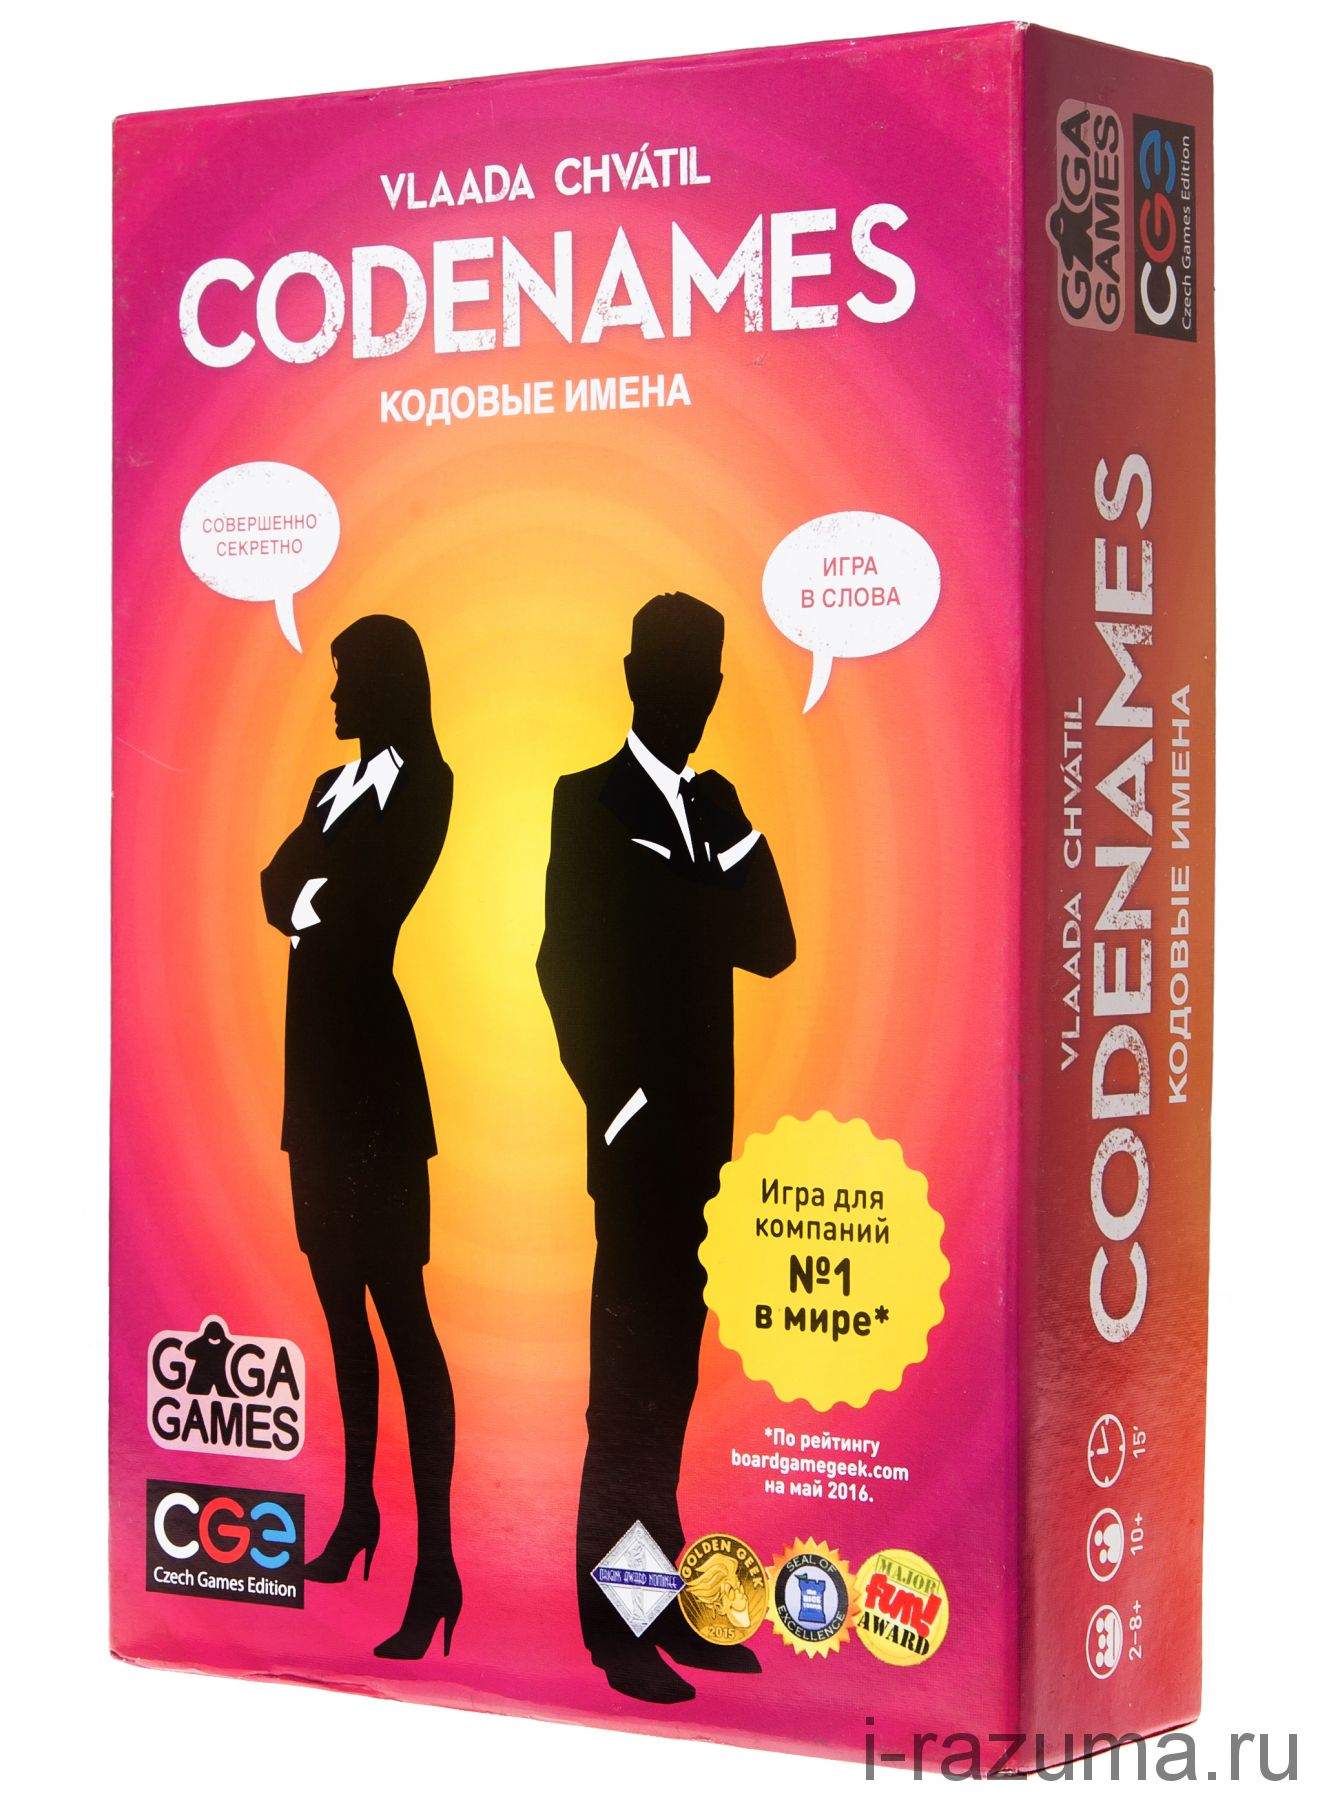 Настольная игра codename. Настольная игра коднеймс. Настольная игра клоднейм. Кодовые имена. Игра кодовые имена.